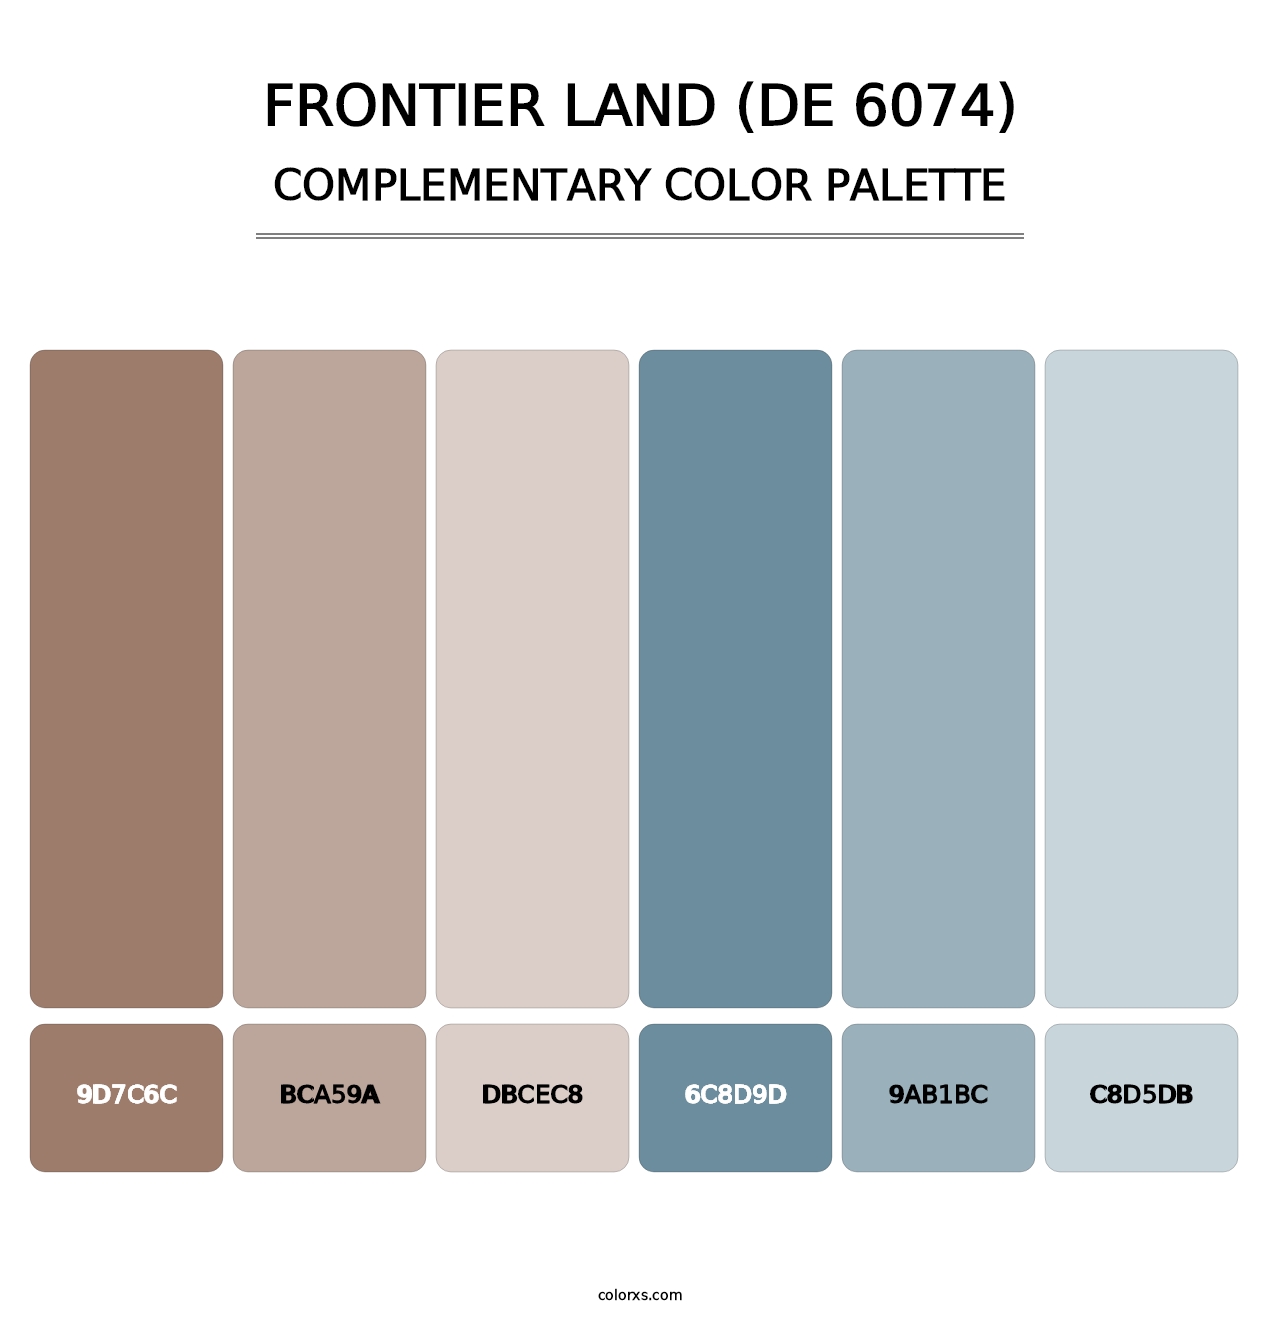 Frontier Land (DE 6074) - Complementary Color Palette